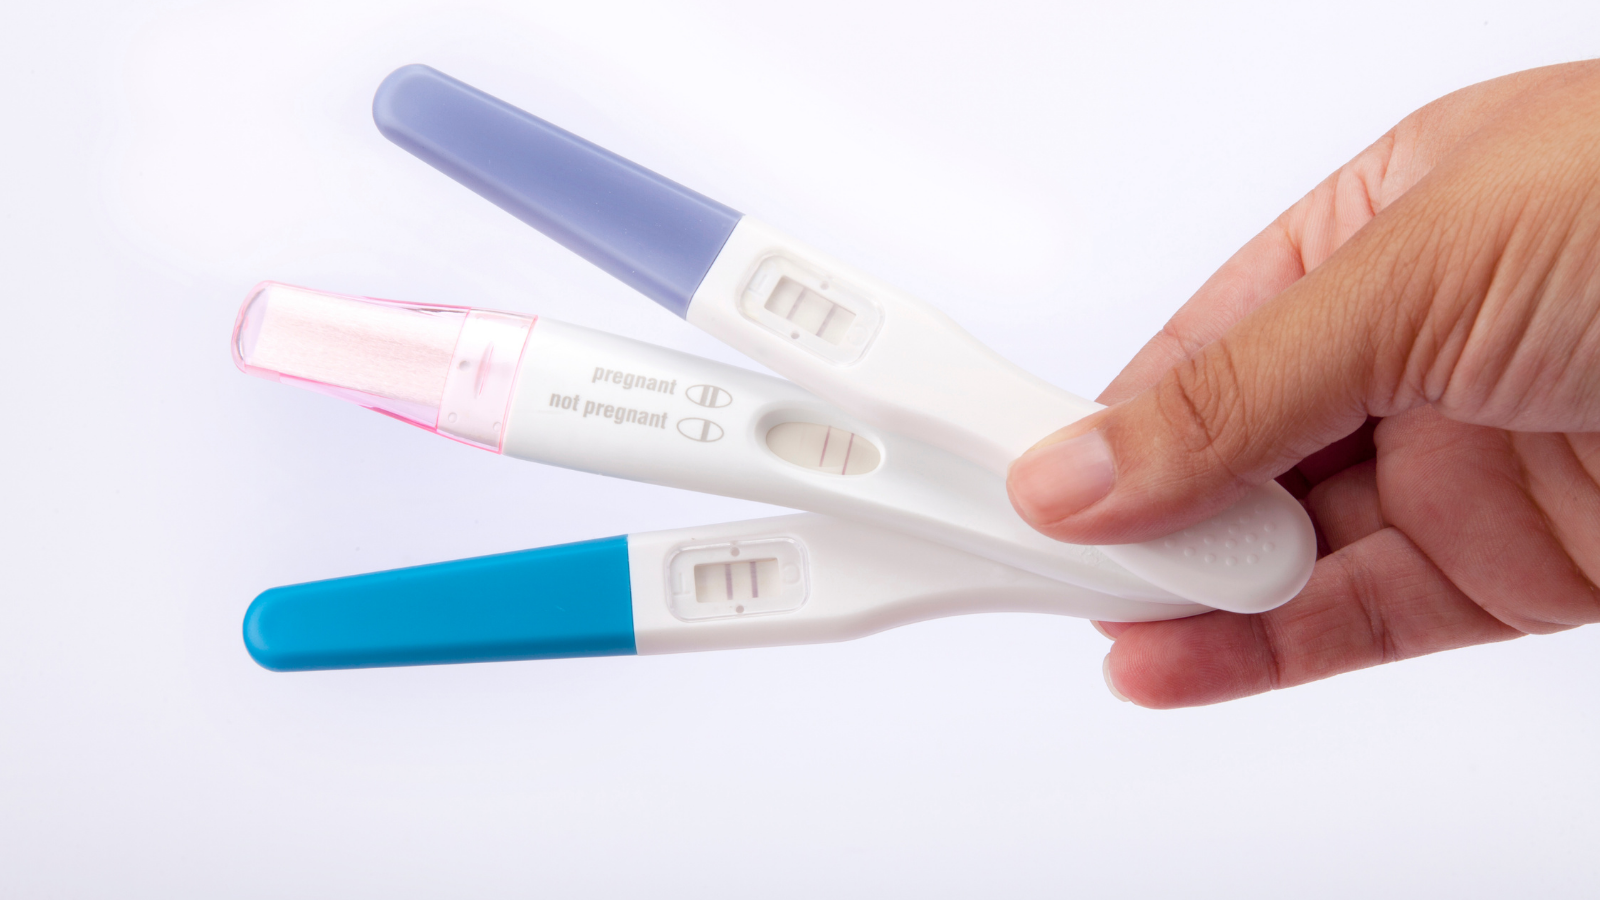 Tests de grossesse